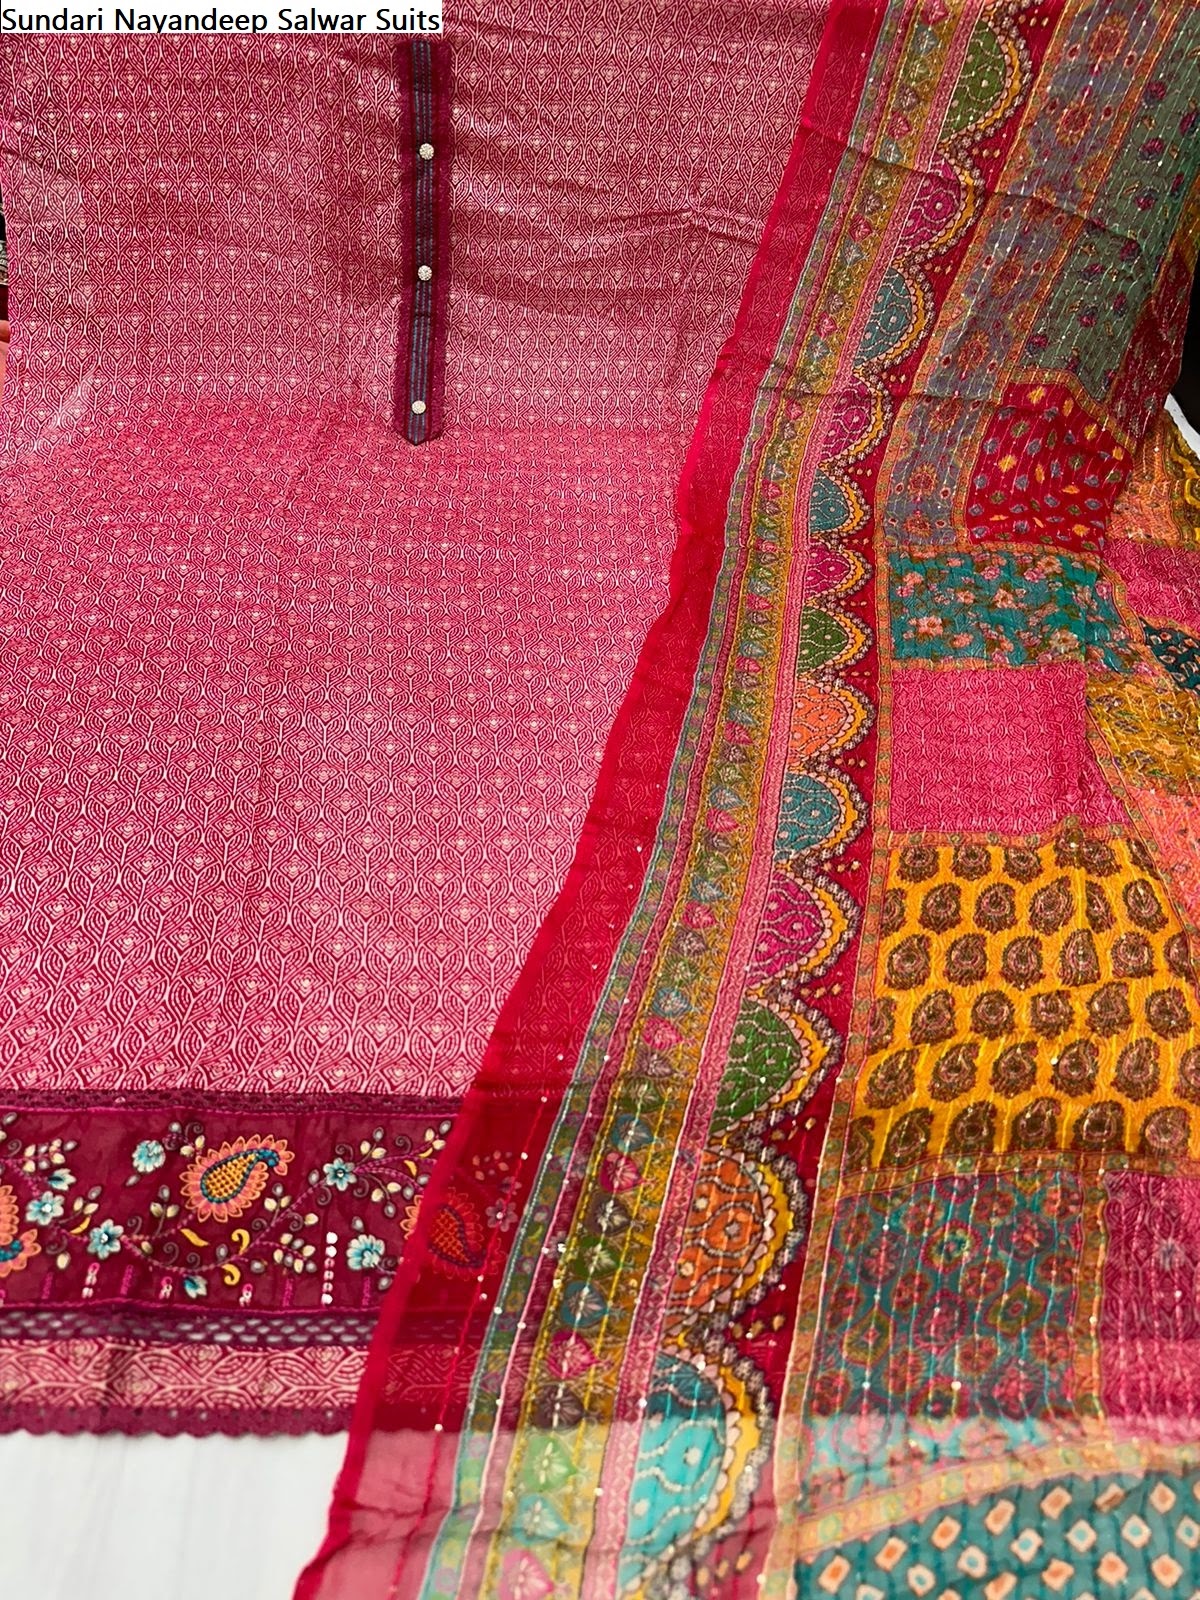 Sundari Nayandeep Viscose Salwar Suits